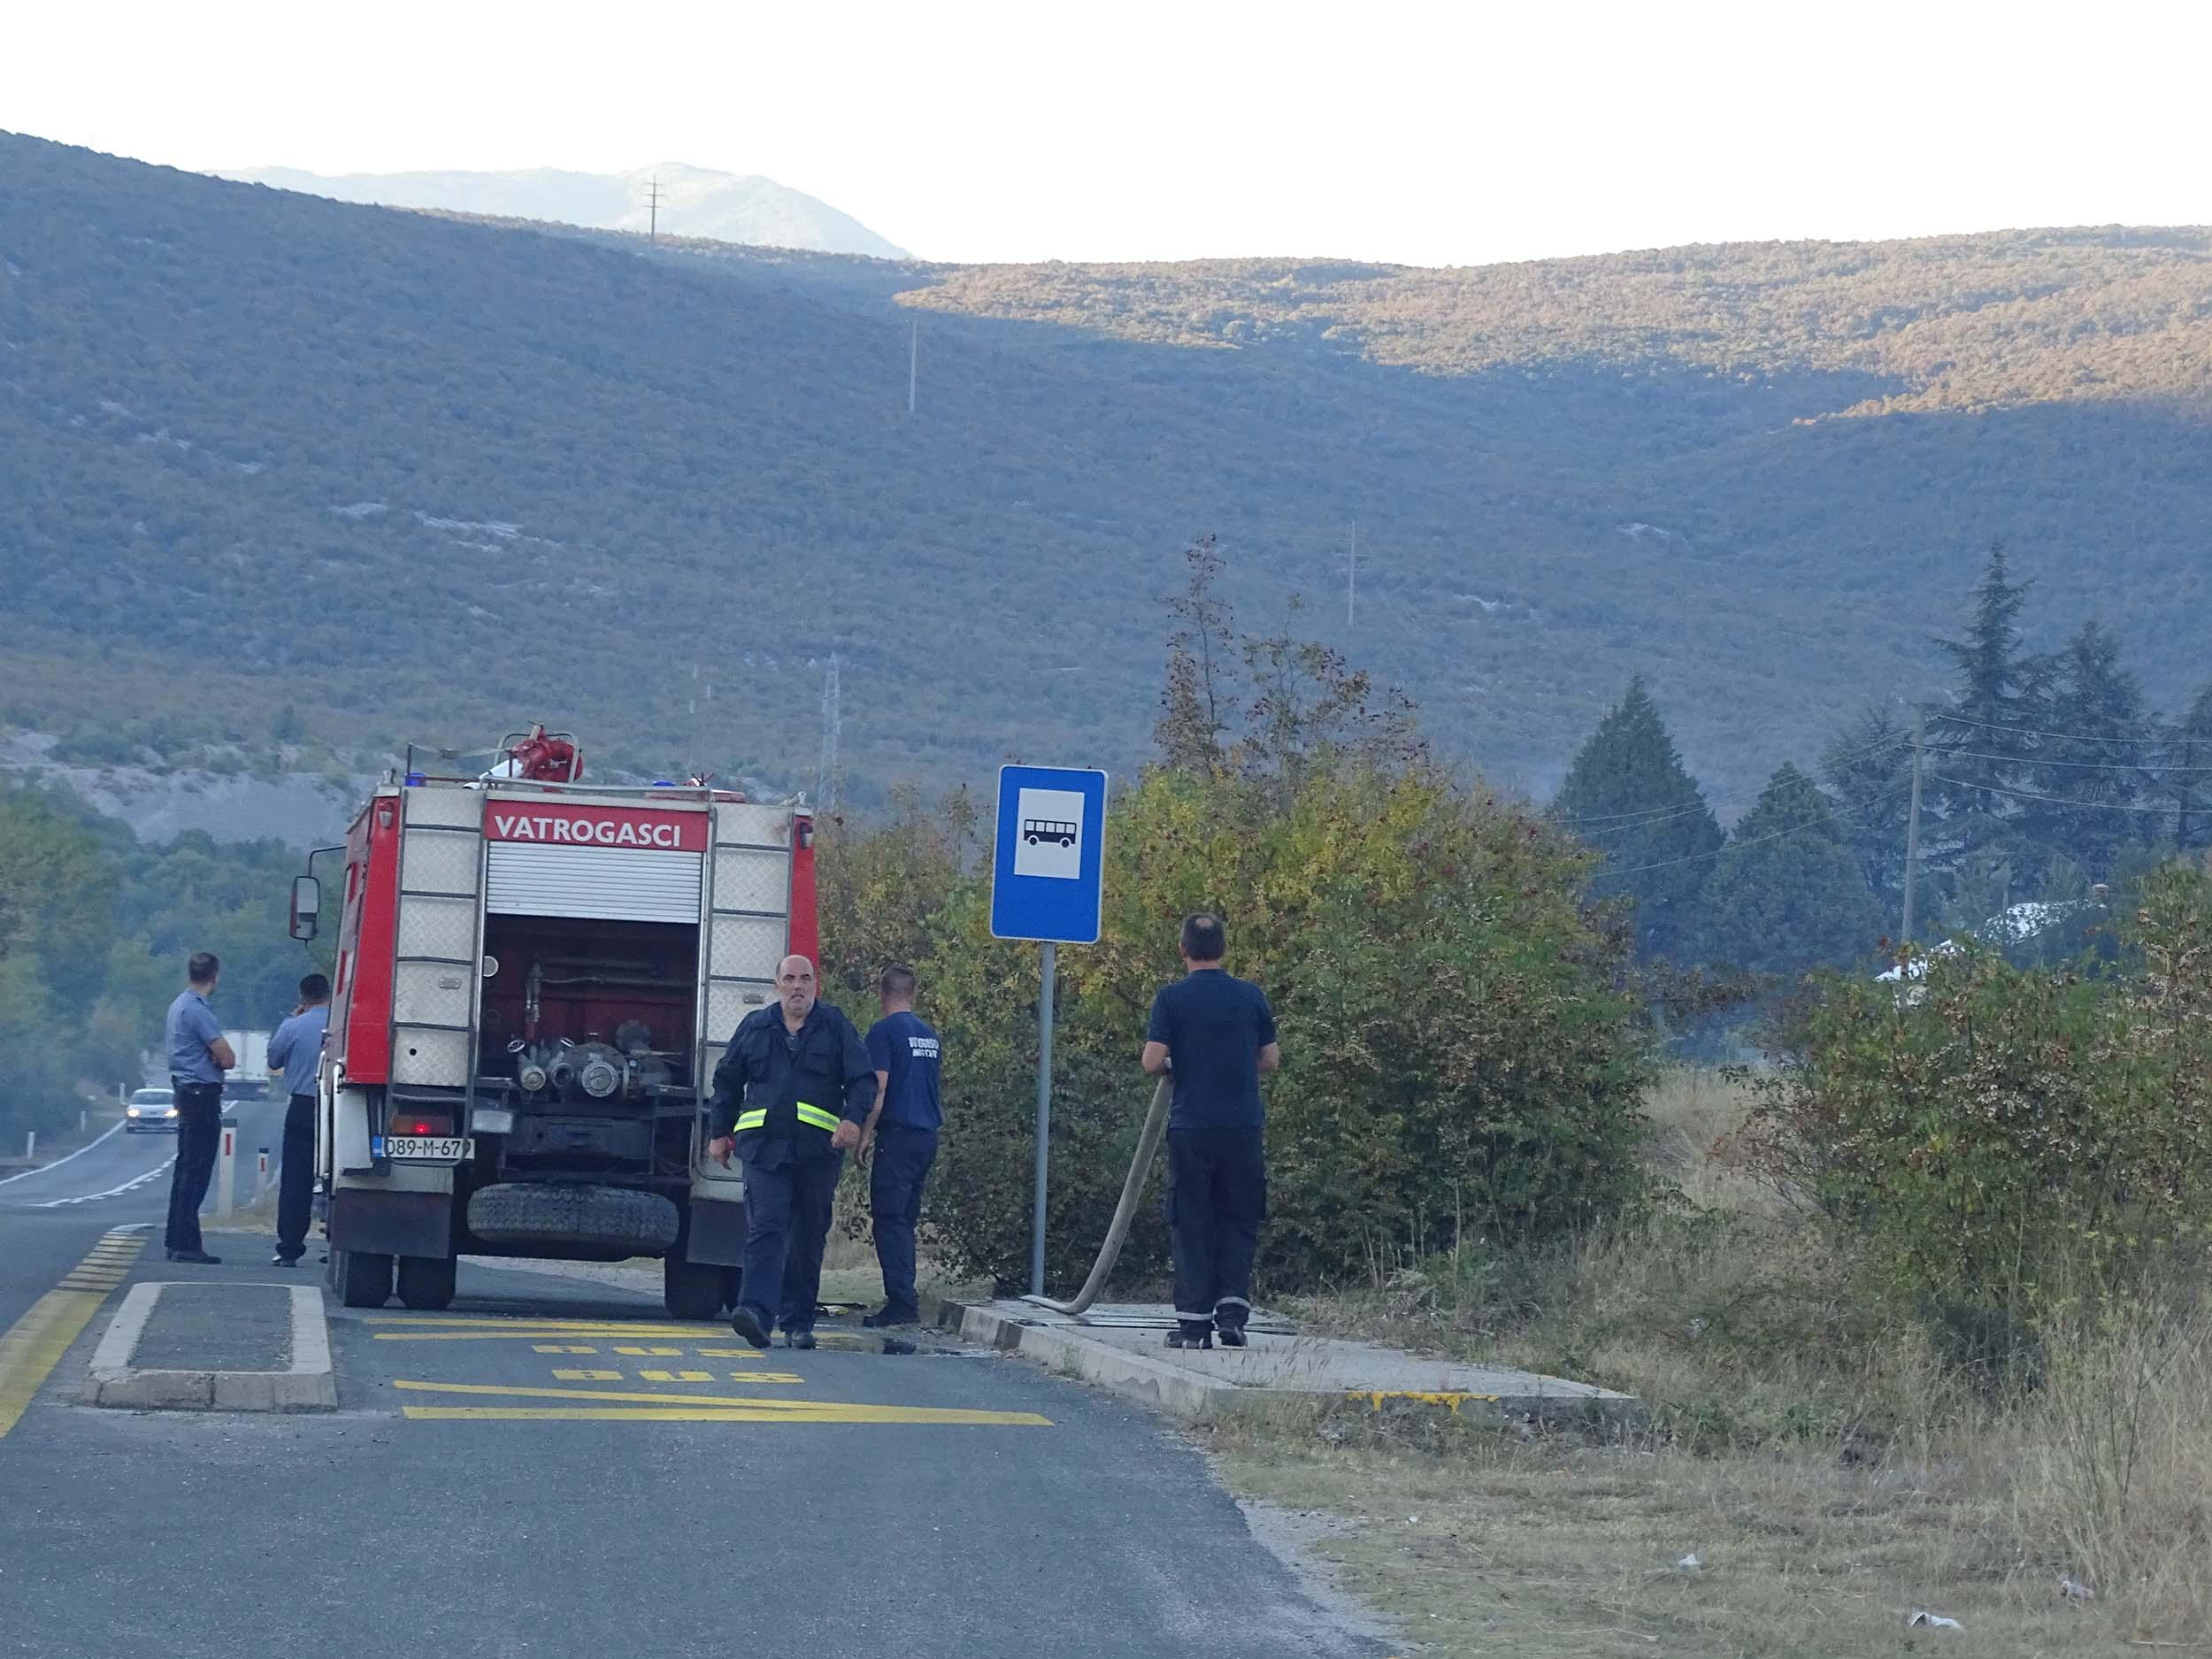 Vatrogasci i mještani u Željuši branili benzinsku pumpu i kuće